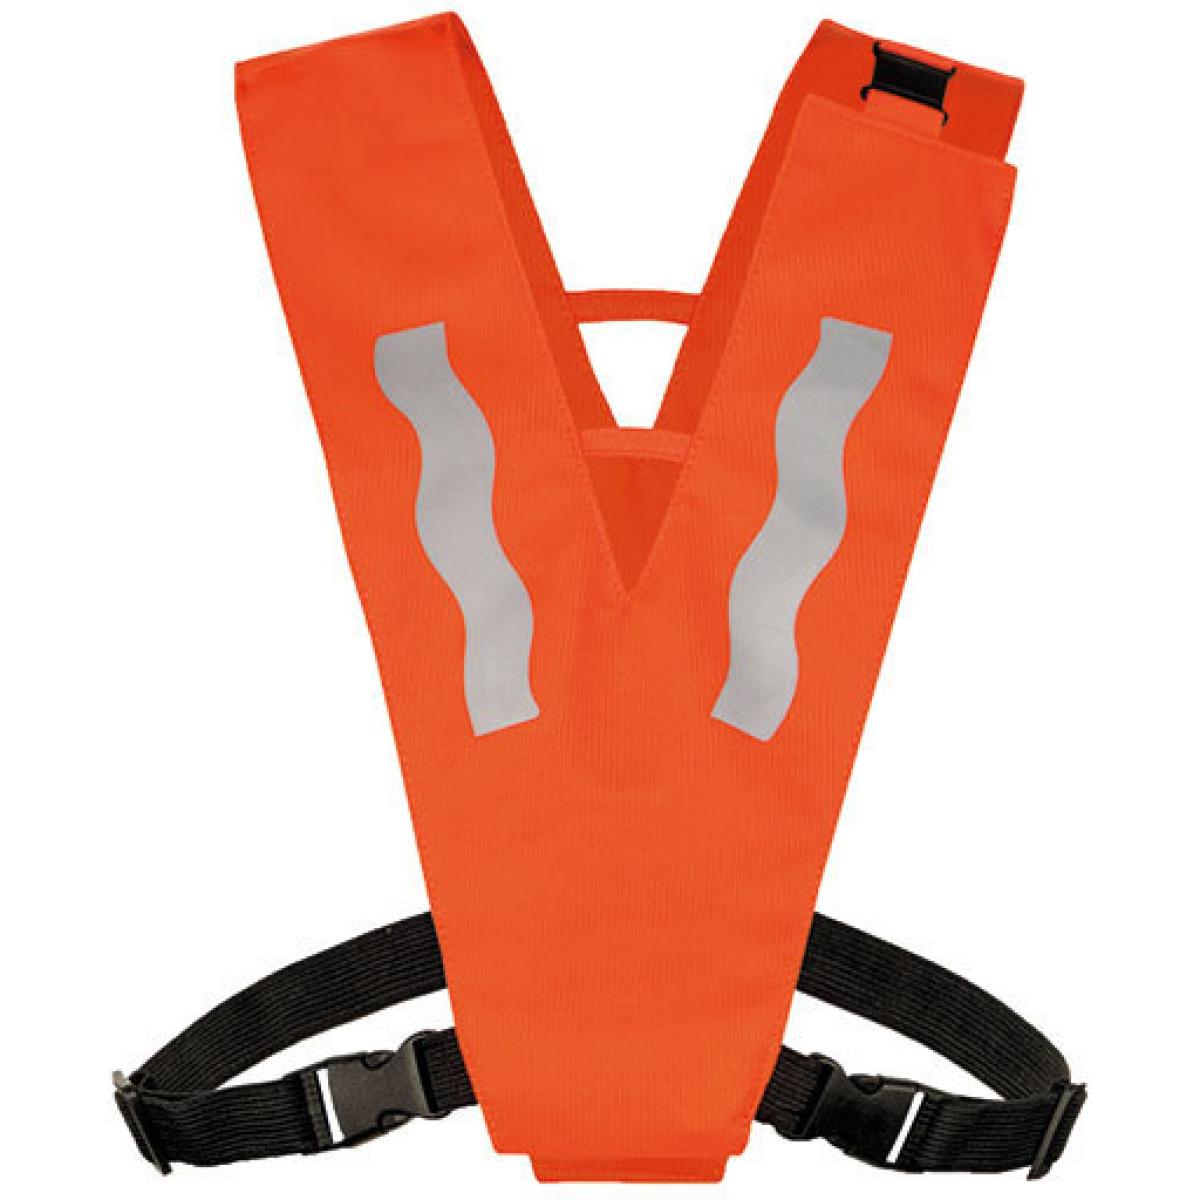 Hersteller: Korntex Herstellernummer: KT100S/XS Artikelbezeichnung: Kinder Safety Collar with Safety Clasp for Kids Farbe: Signal Orange